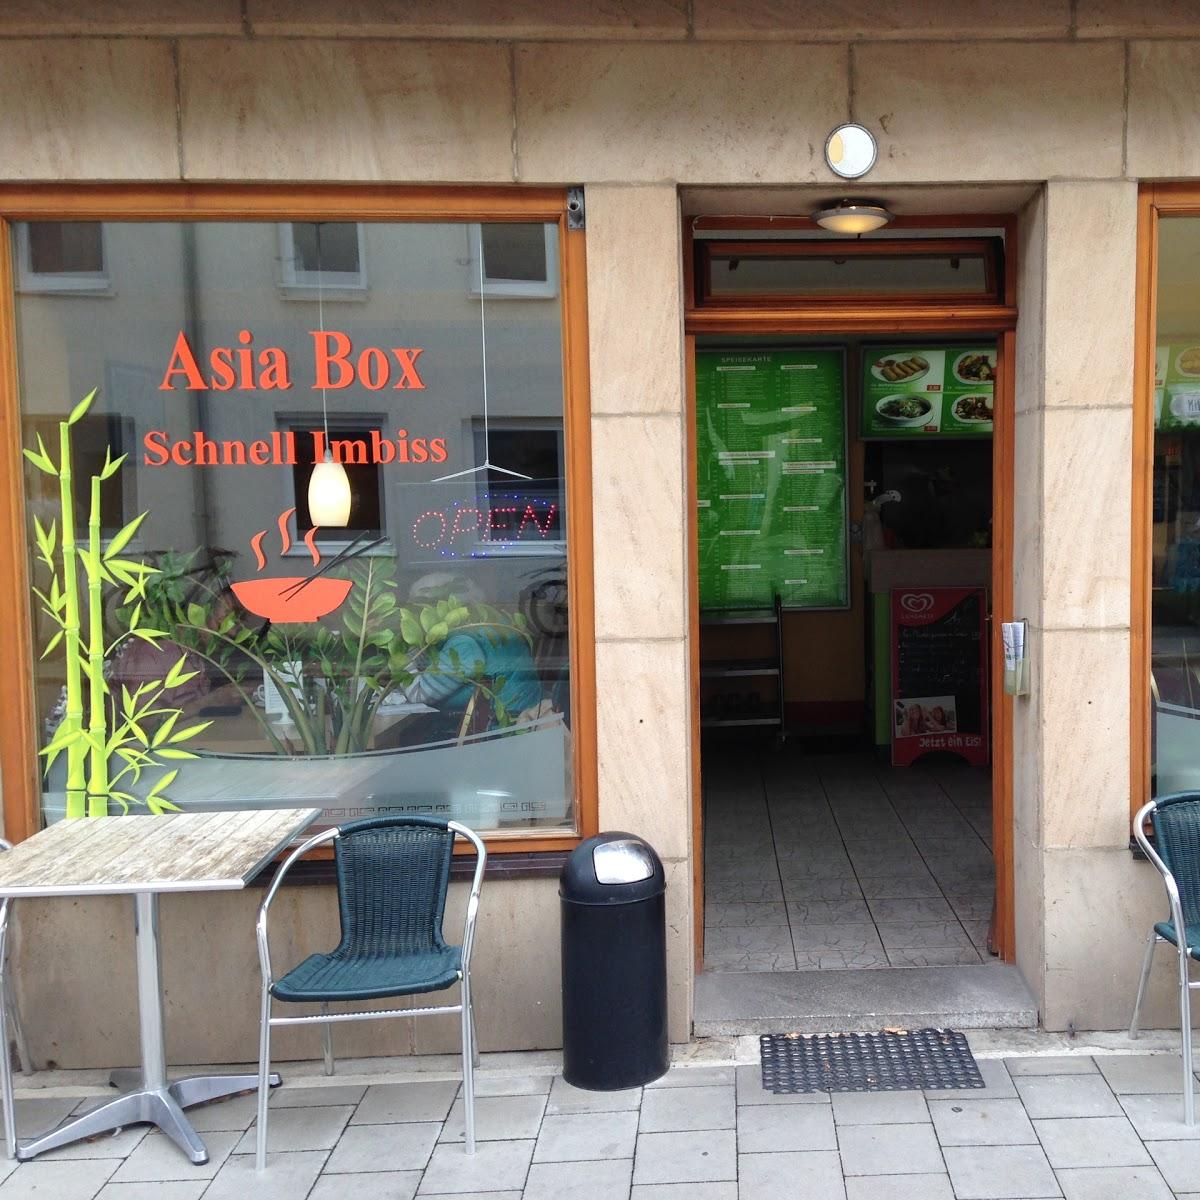 Restaurant "Asia Box" in Erlangen